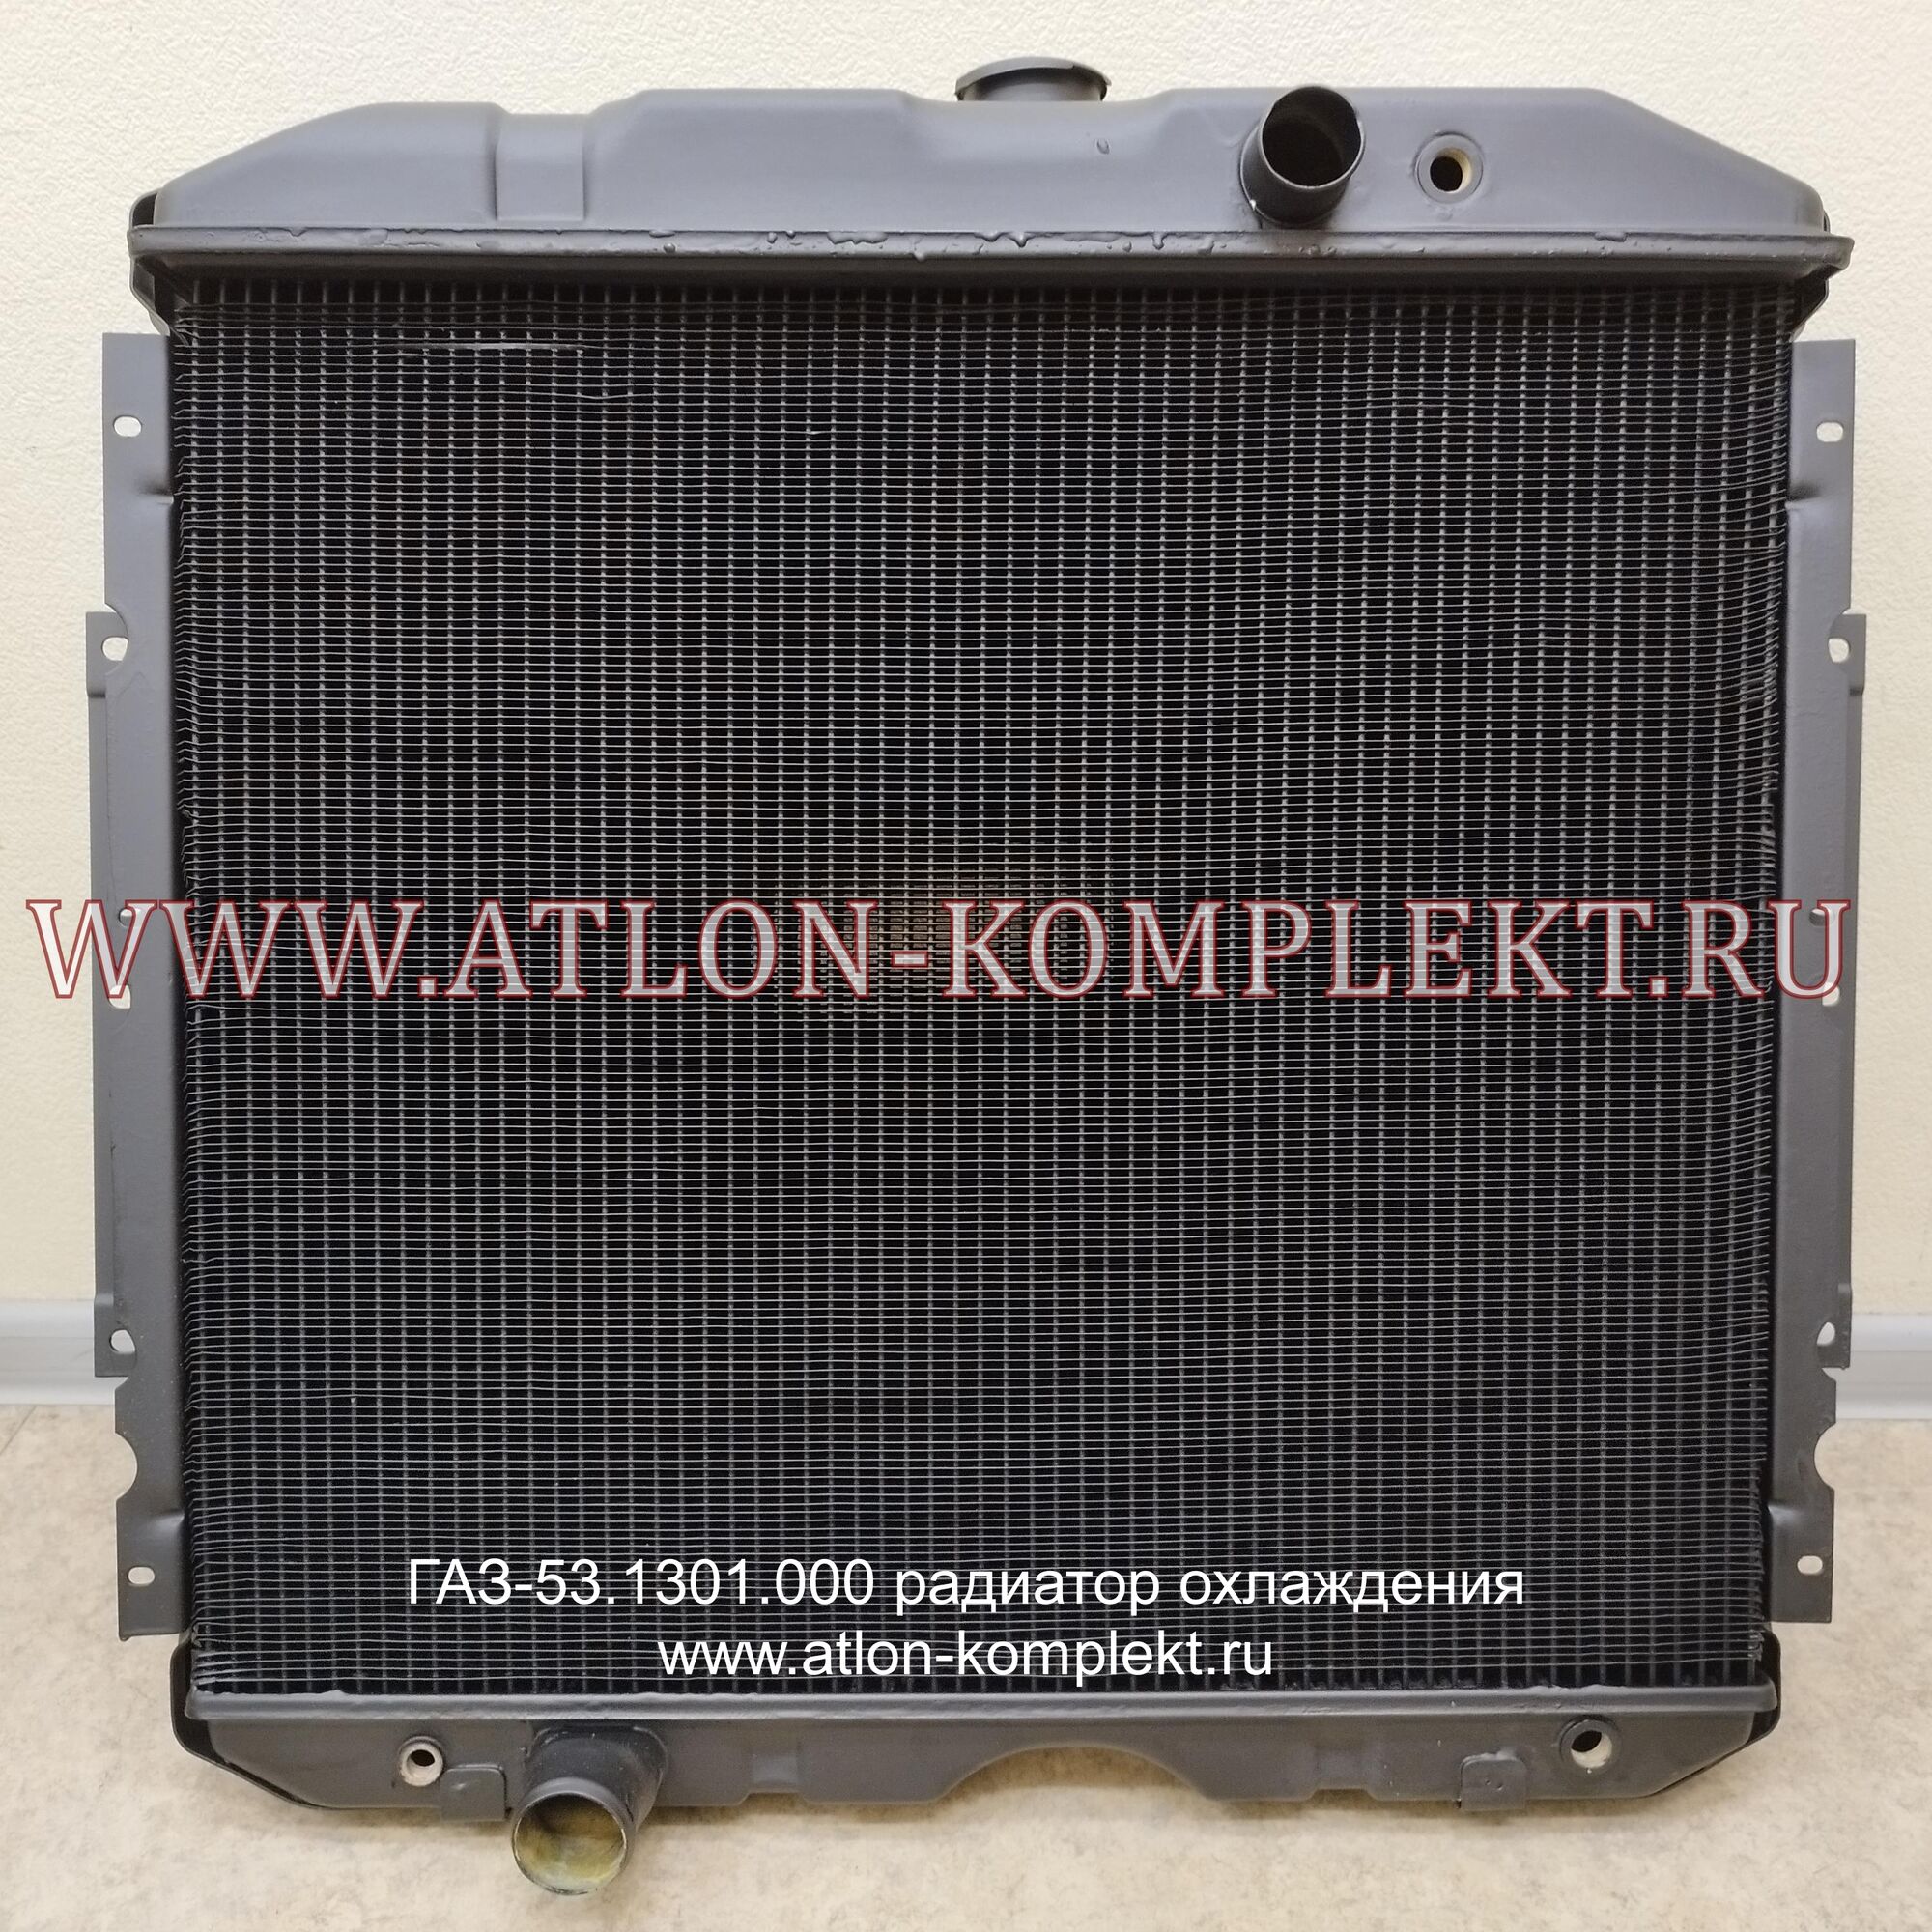 Радиатор ГАЗ-53 медный 53.1301.000 3-х рядный